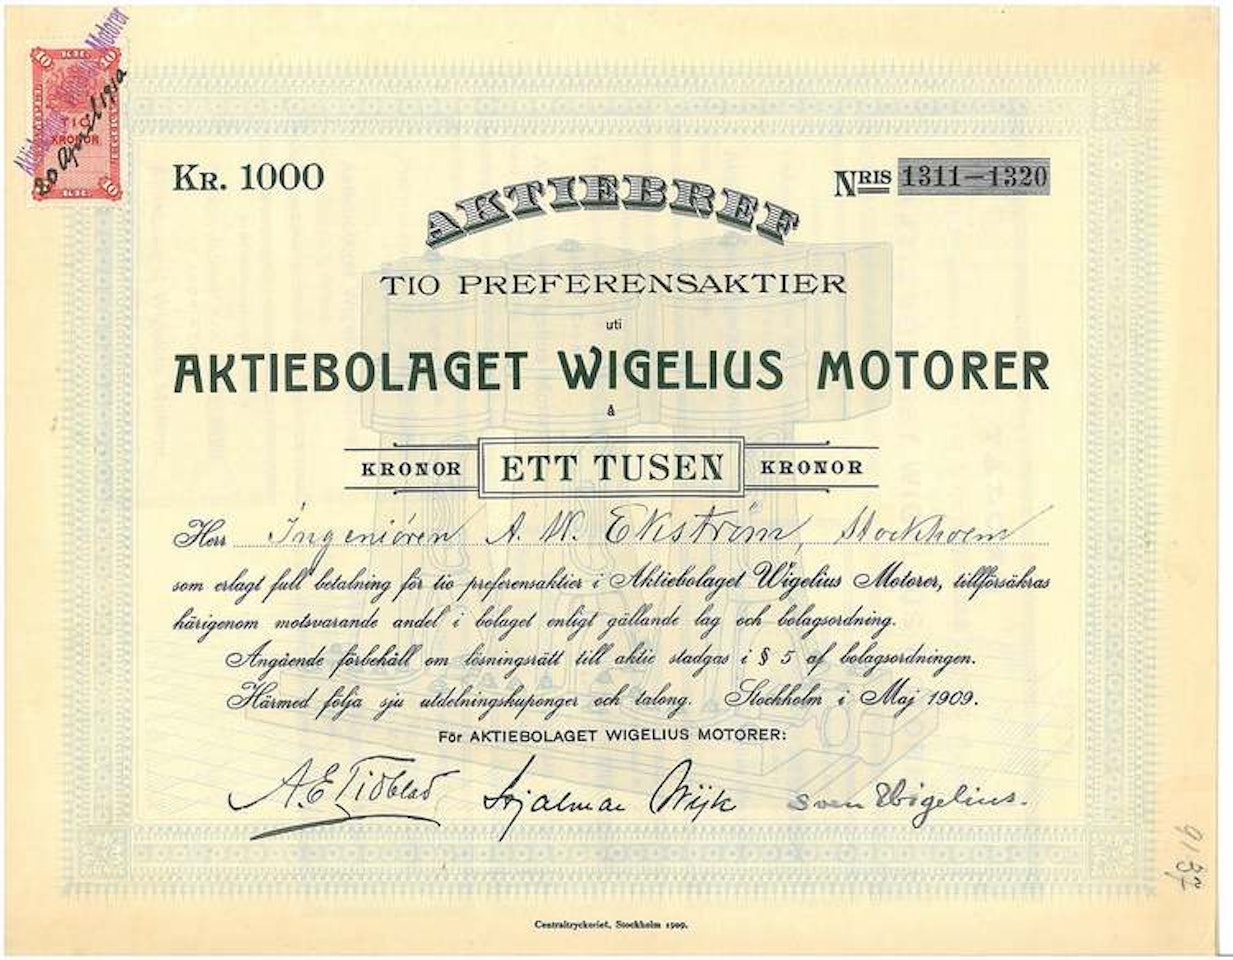 Wigelius Motorer, AB